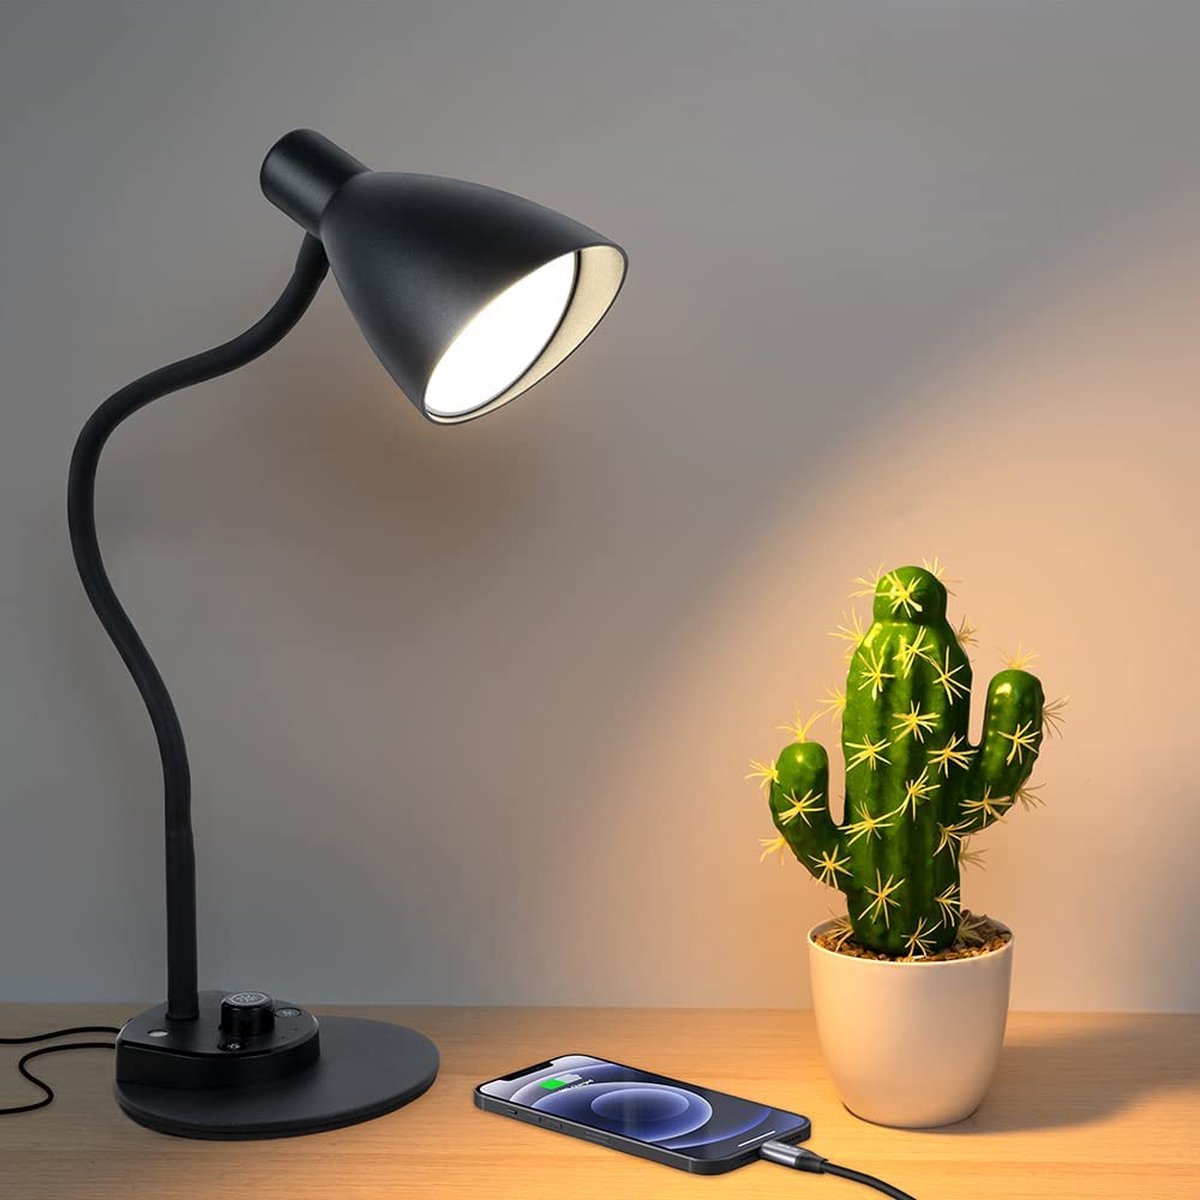 Lampes District ® - Lampe de bureau LED - Recharge de téléphone